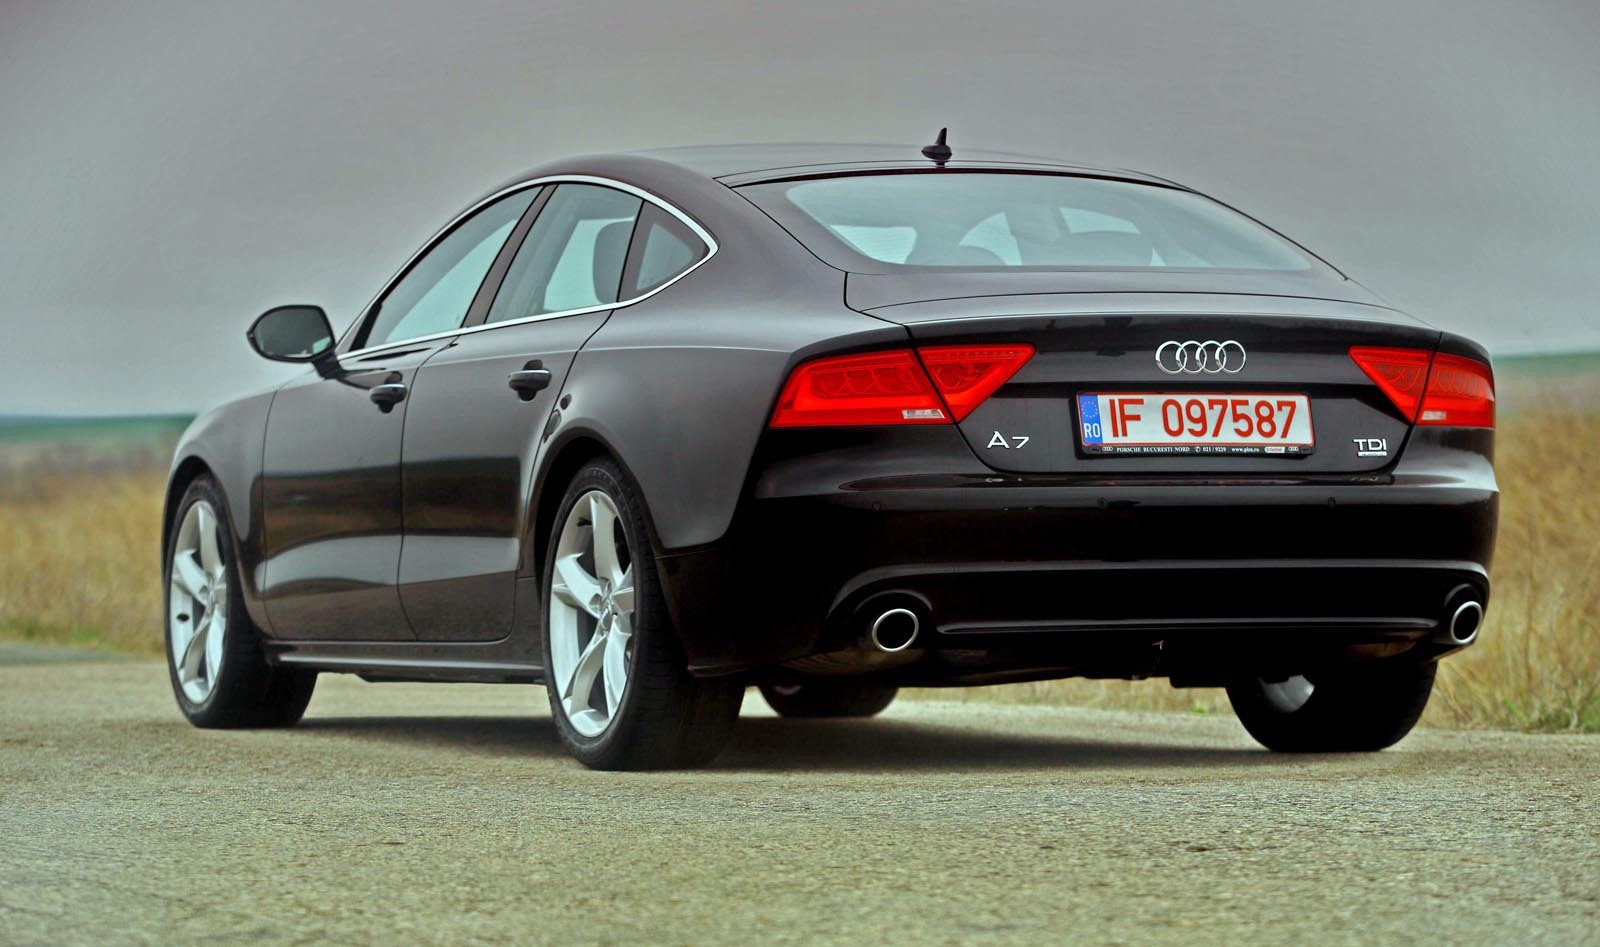 Din spate, Audi A7 Sportback arata cel mai original, stopurile conferindu-i prestanta